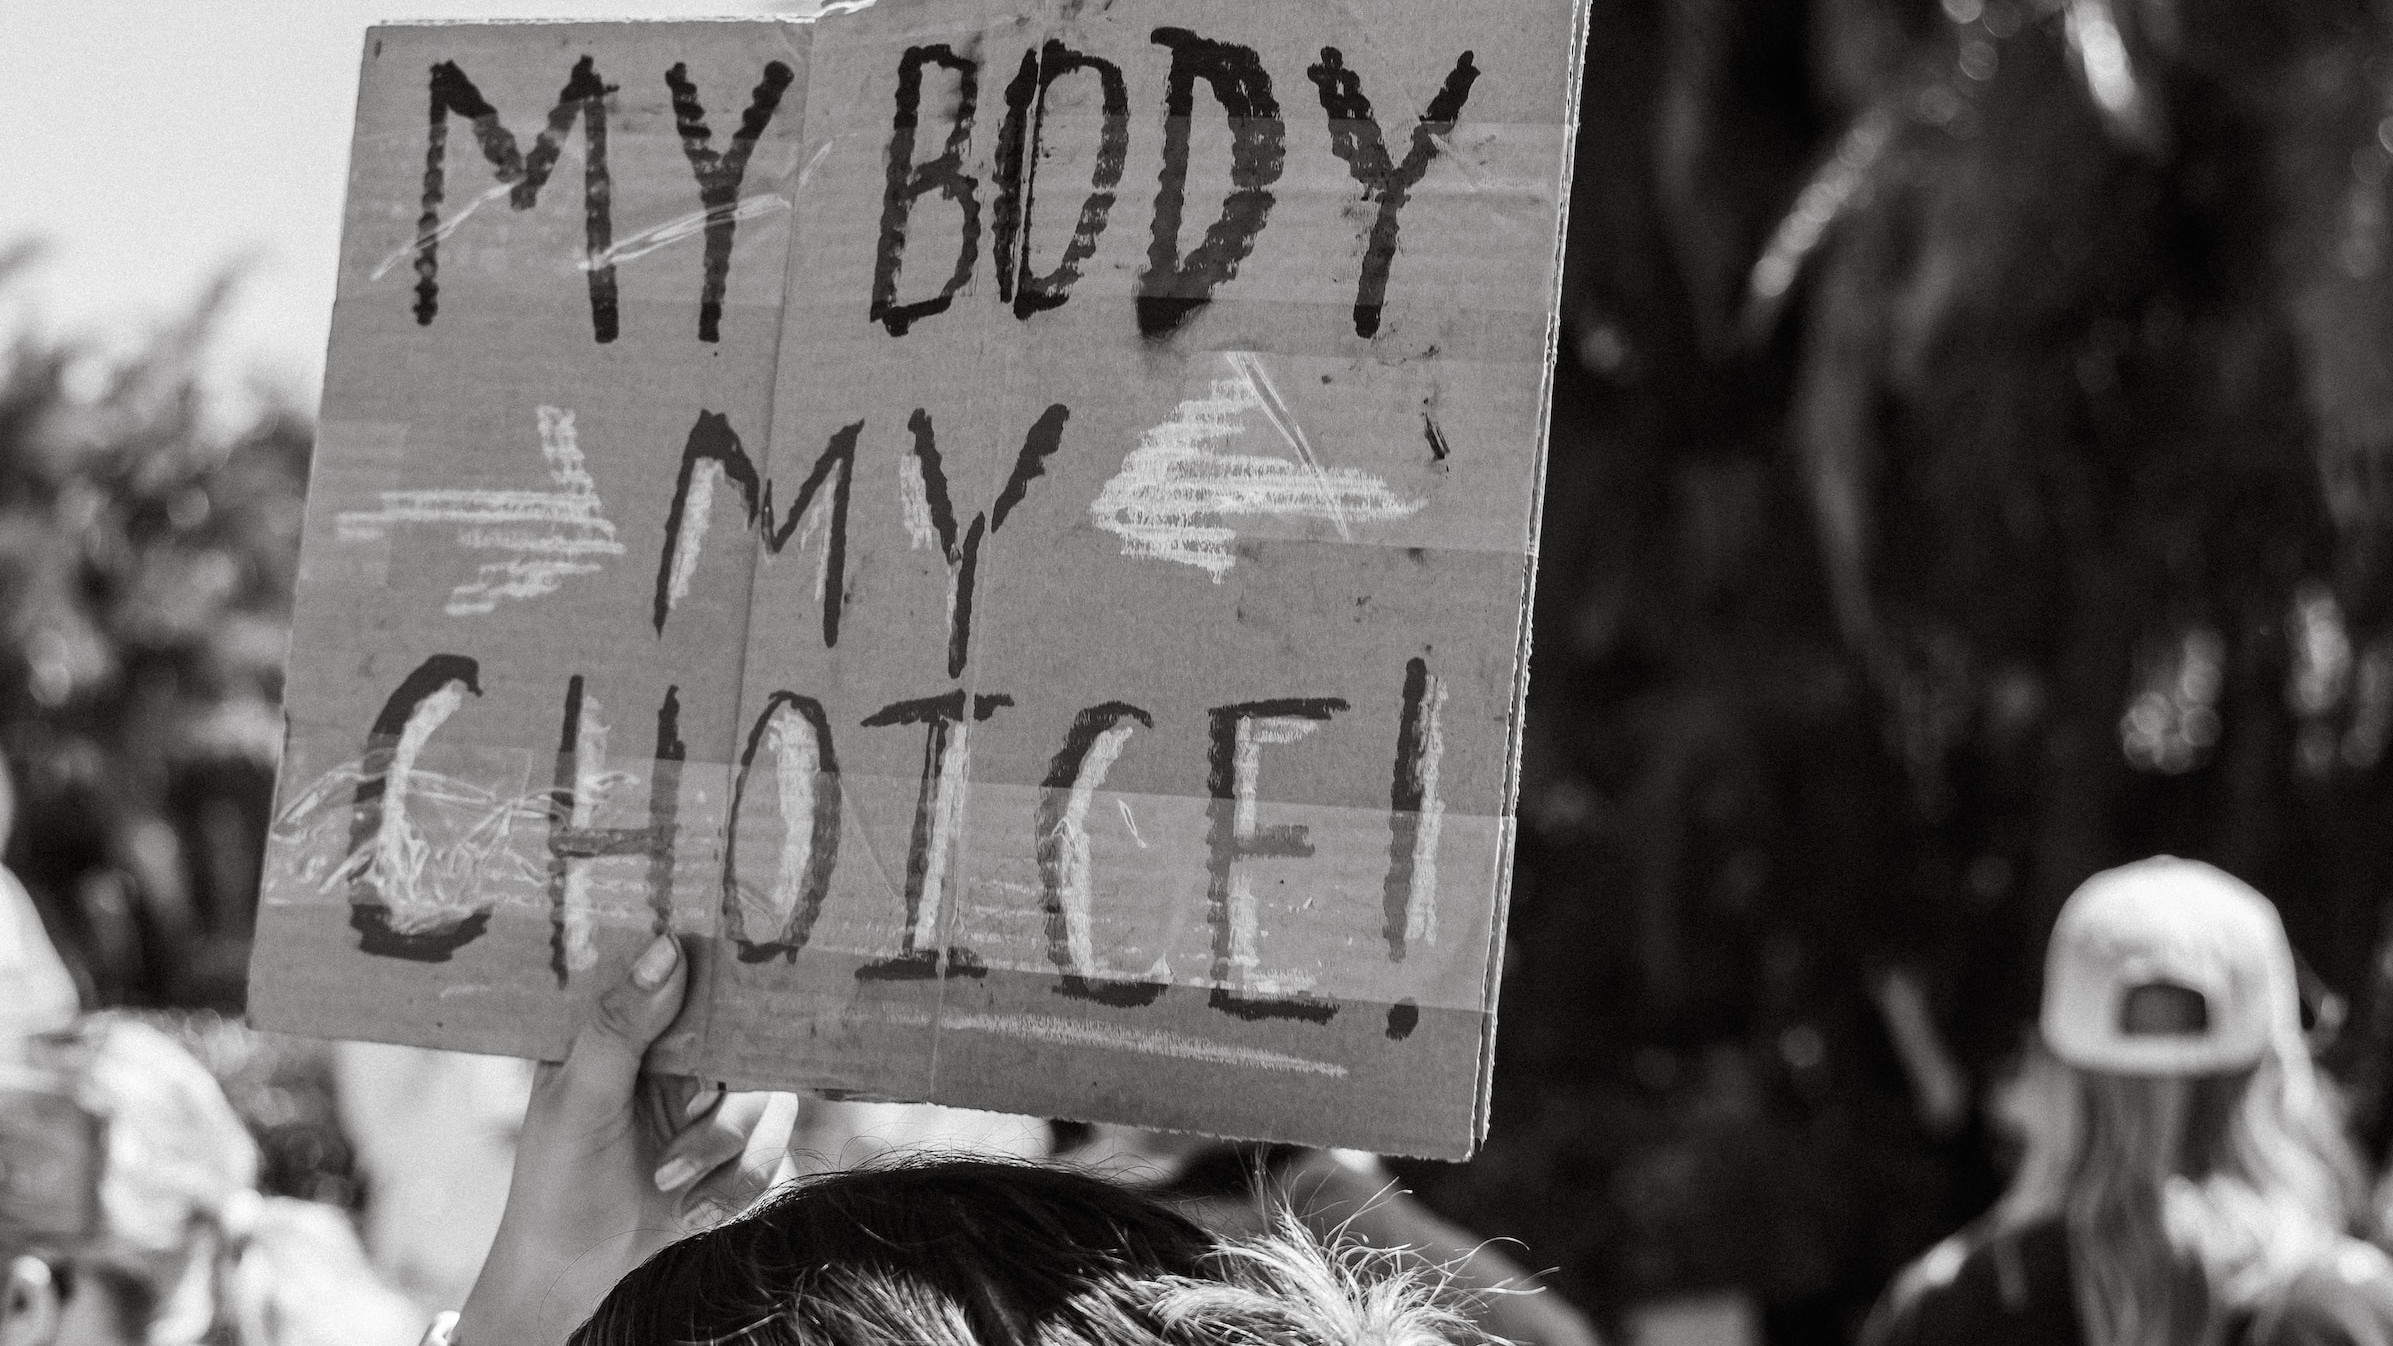 Eine Aufnahme von einer Demo: Eine Person hält ein Schild in die Luft, auf dem "My Body My Choice" steht.